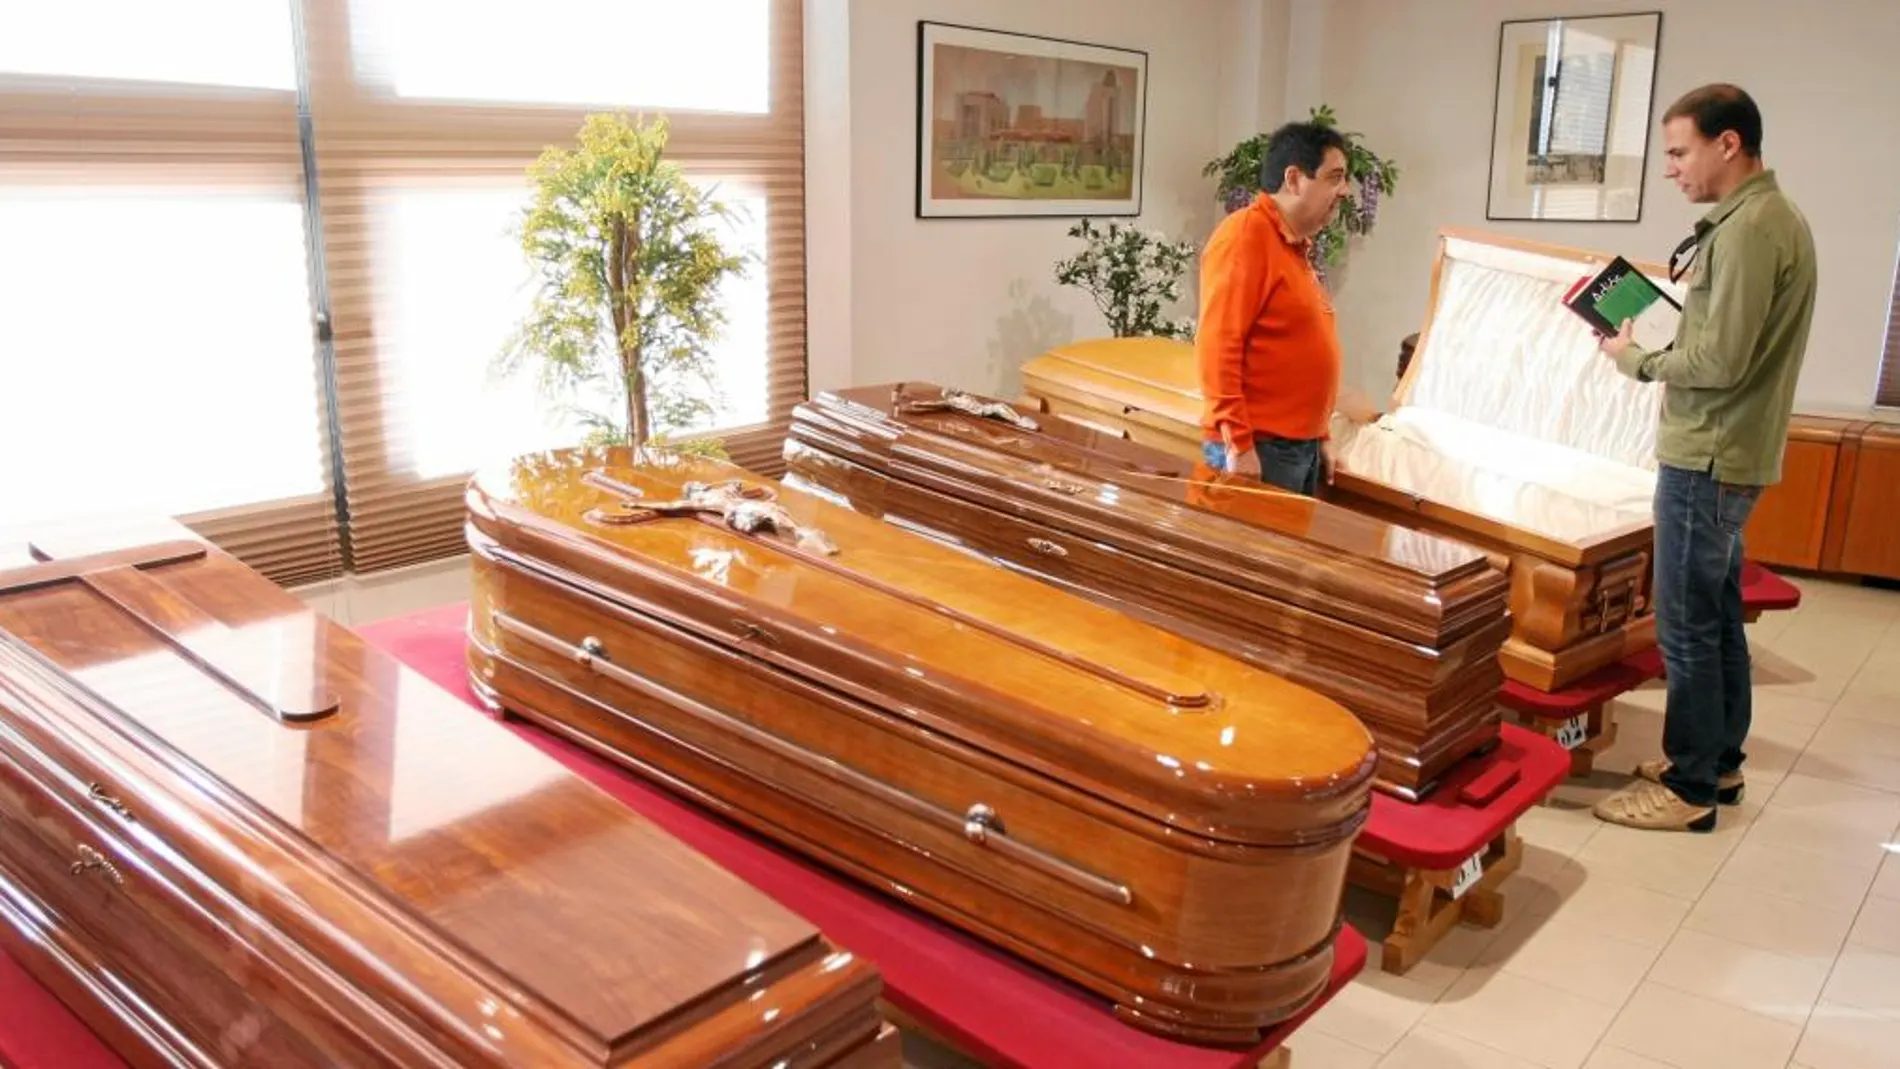 Actualmente el mercado funerario de Barcelona se compone sólo de dos operadores.